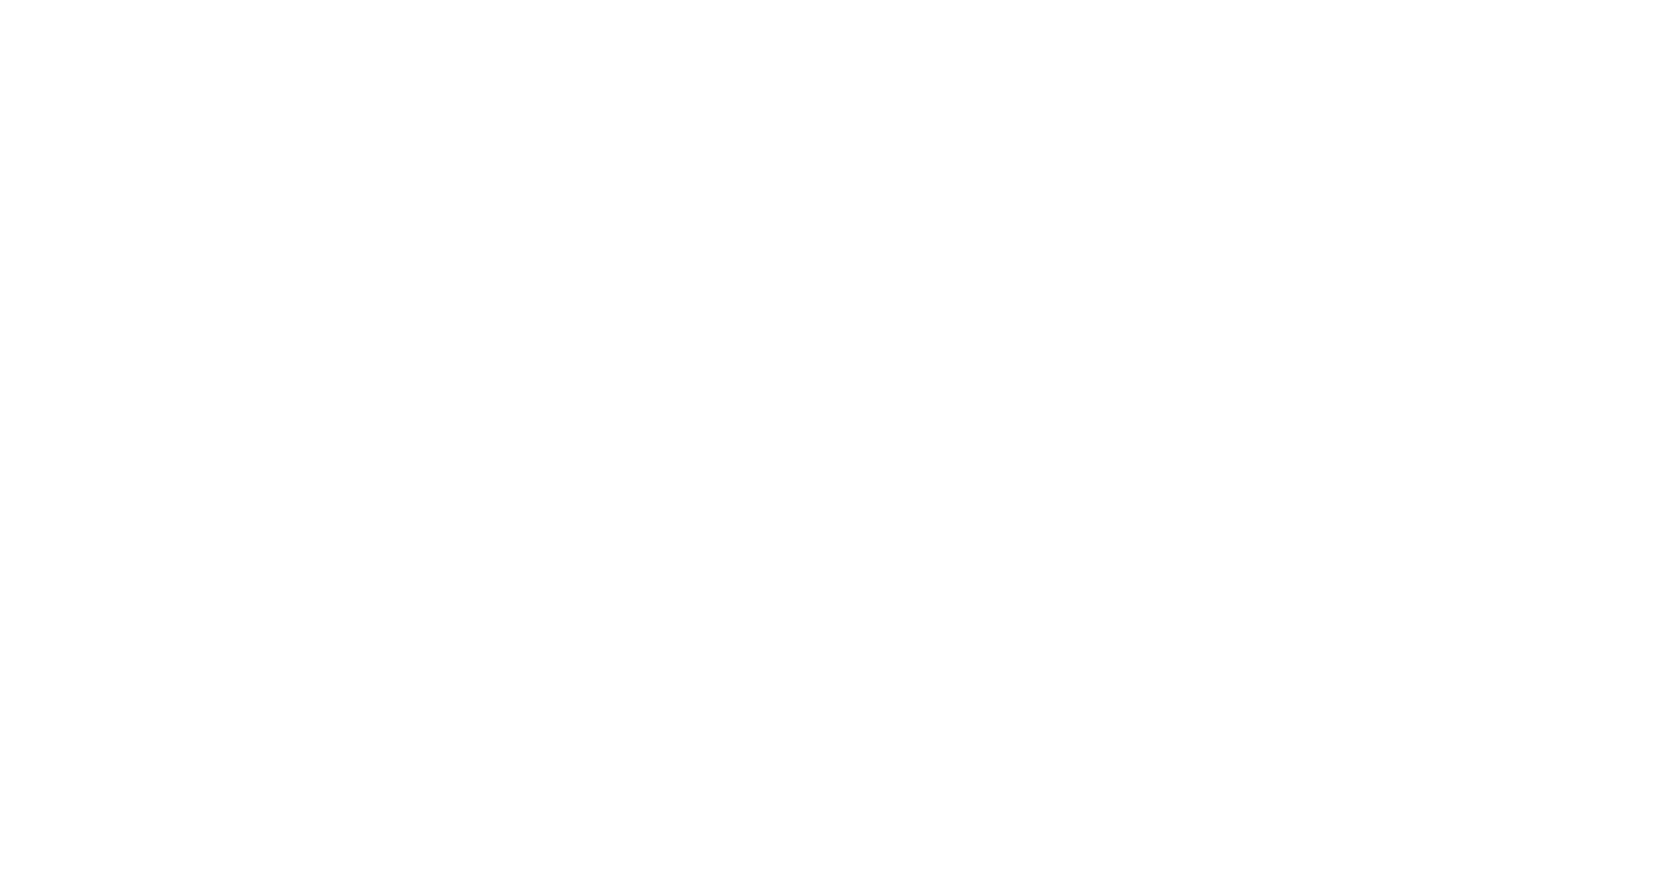 Кейс сервиса BRANDNATION - Дизайн упаковки для линейки кофе. Брендинговое агентство BRANDNATION в Москве и Санкт-Петербурге. Услуги: разработка логотипа и фирменного стиля, дизайн упаковки, брендбук, ребрендинг, разработка сайта.